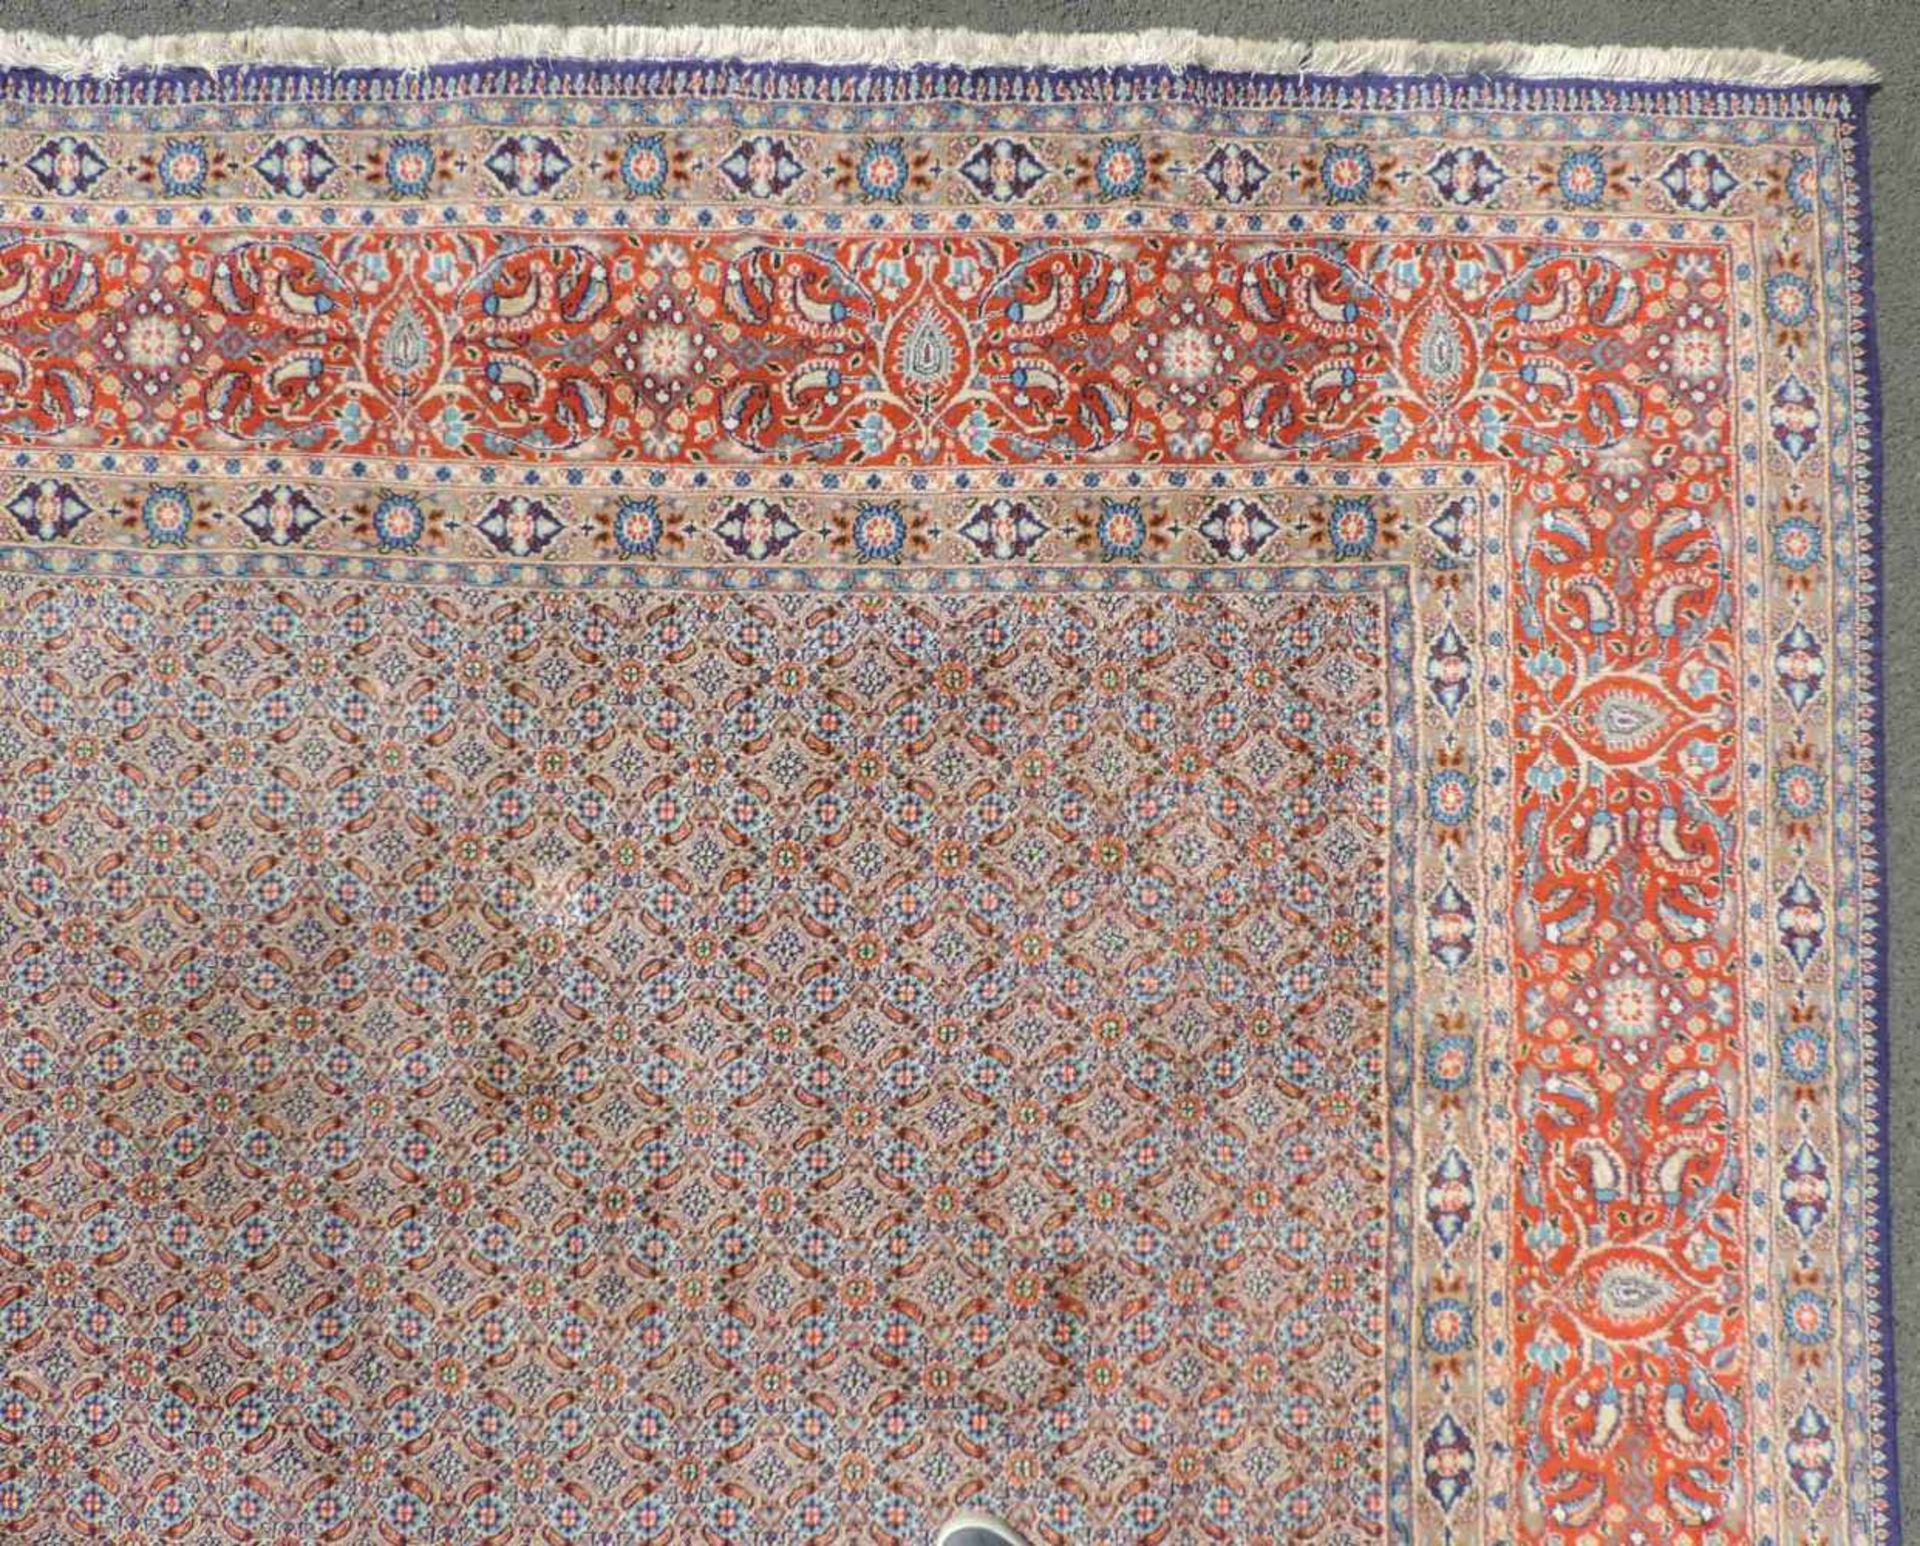 Moud Perserteppich. Iran. 406 cm x 300 cm. Handgeknüpft. Wolle auf Baumwolle. Zustand siehe Fotos. - Image 8 of 10